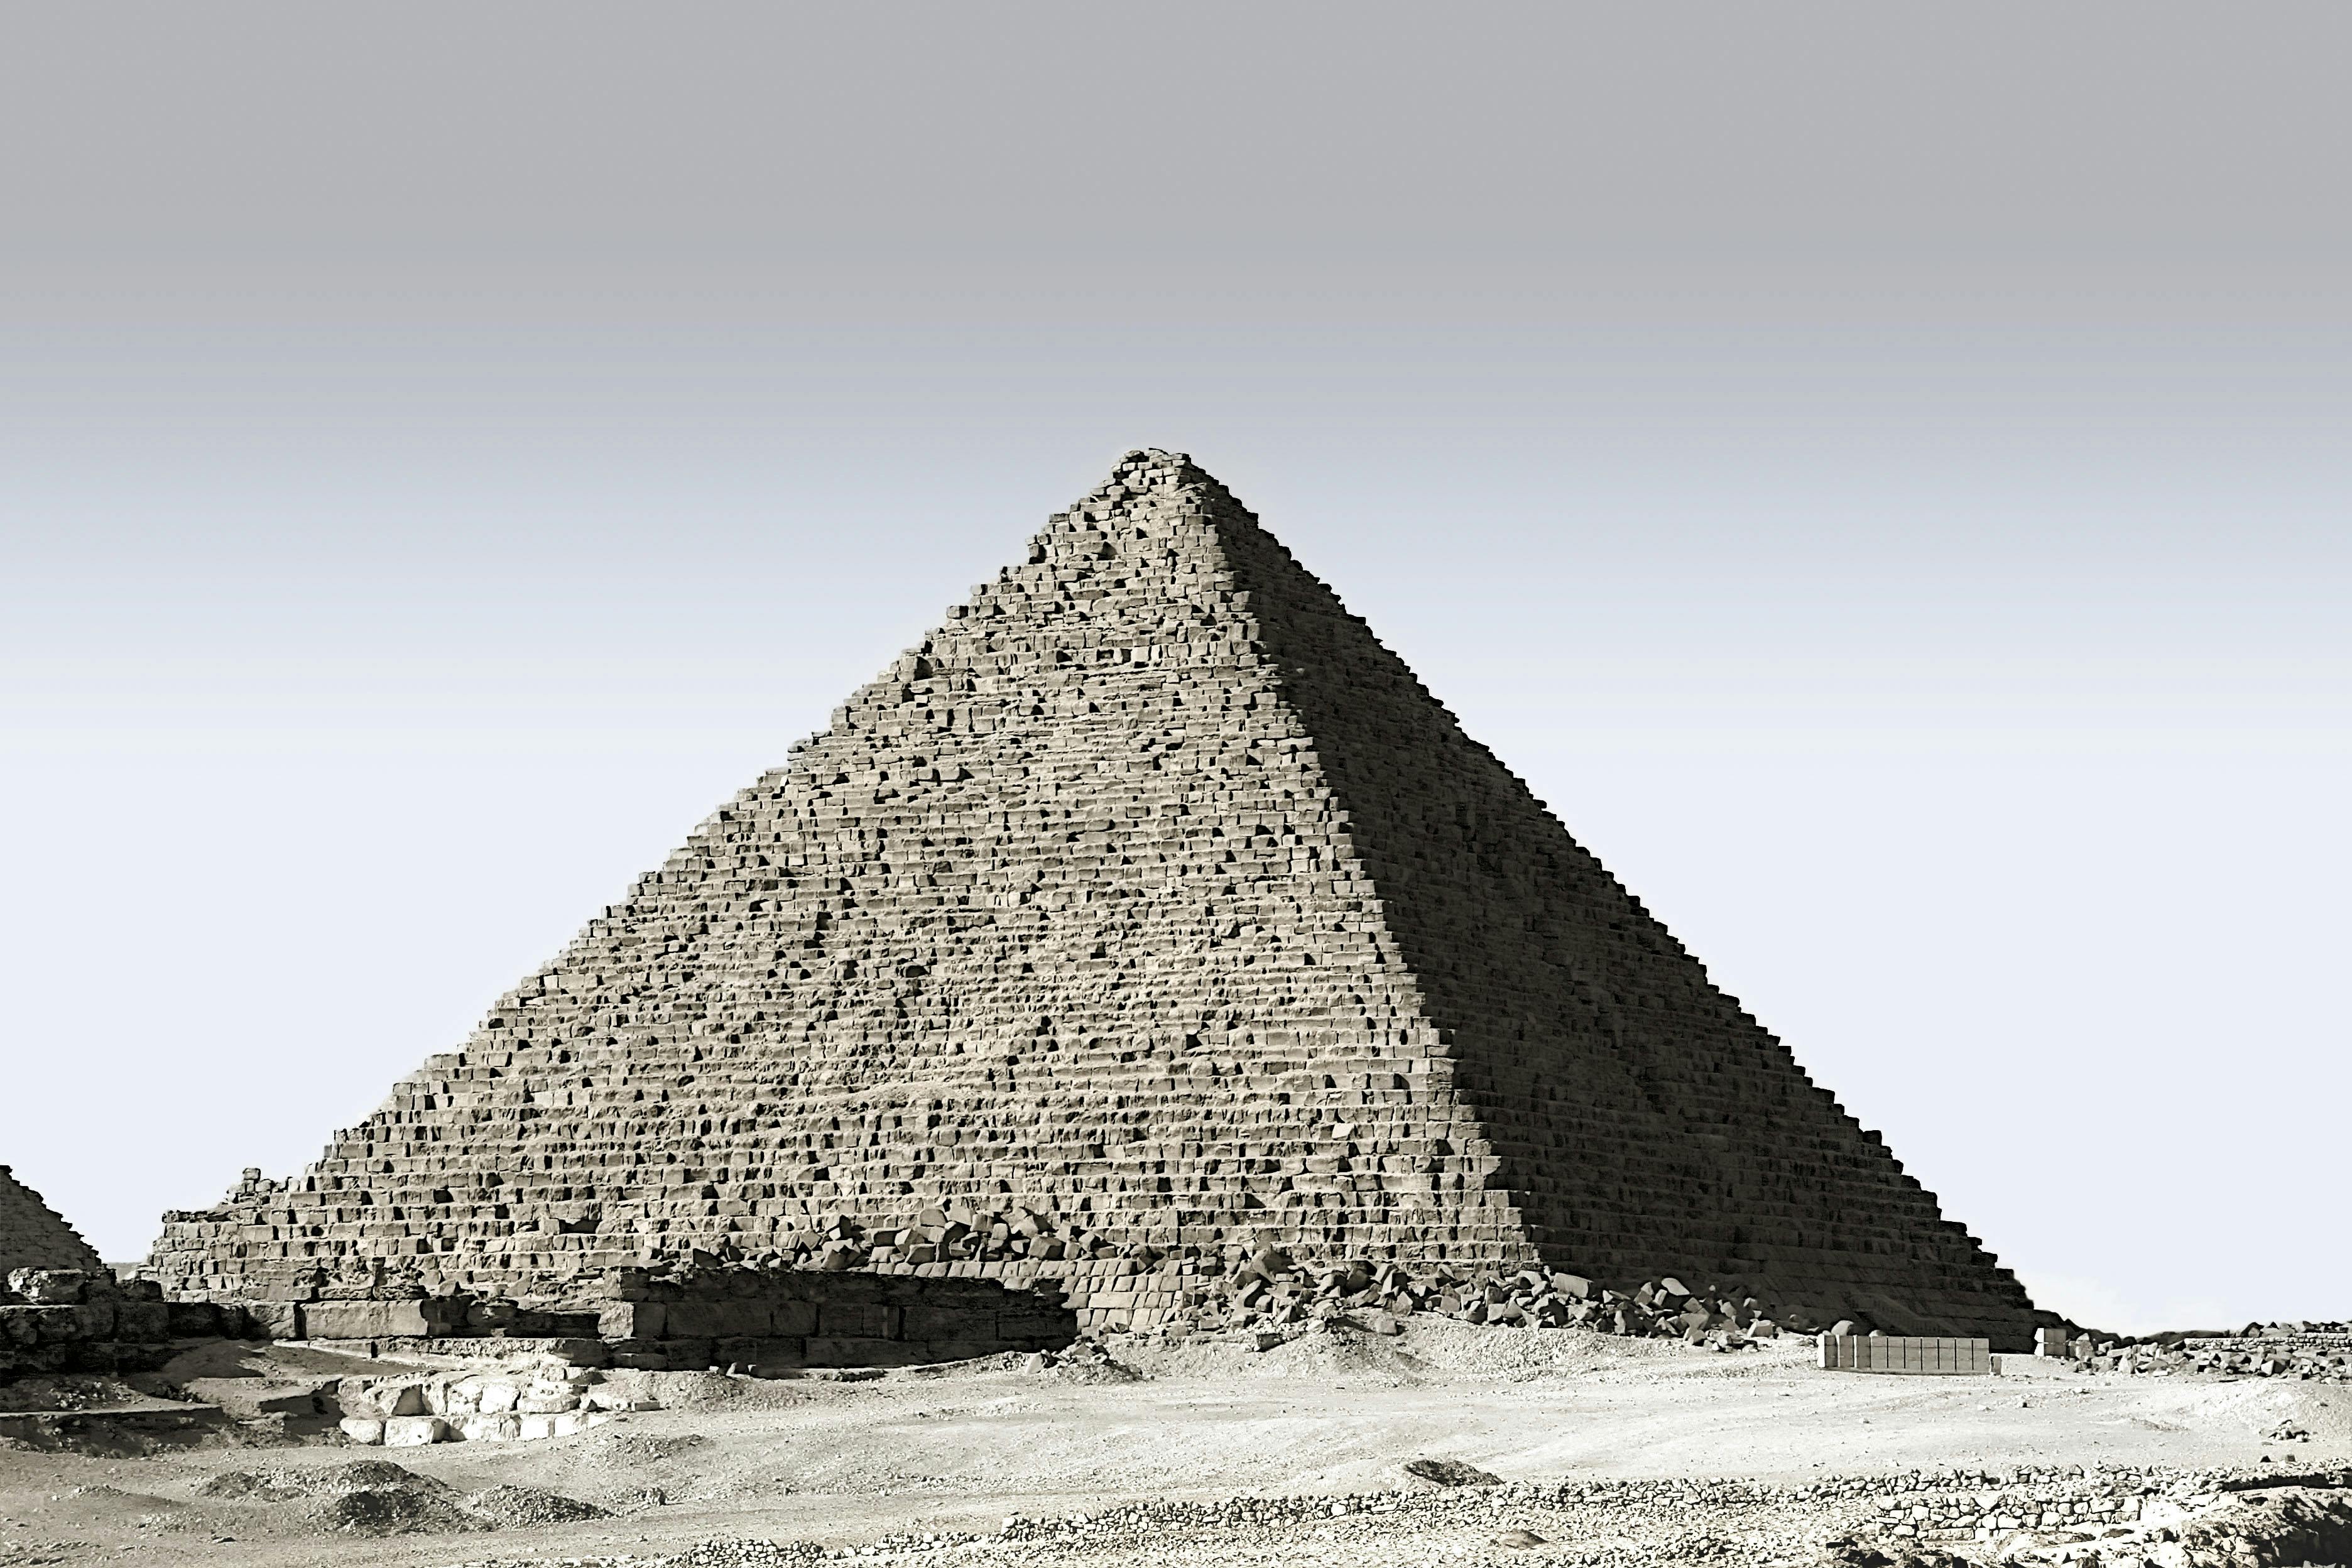 Khám phá Kim tự tháp Giza Ai Cập - Điều thú vị, mẹo du lịch